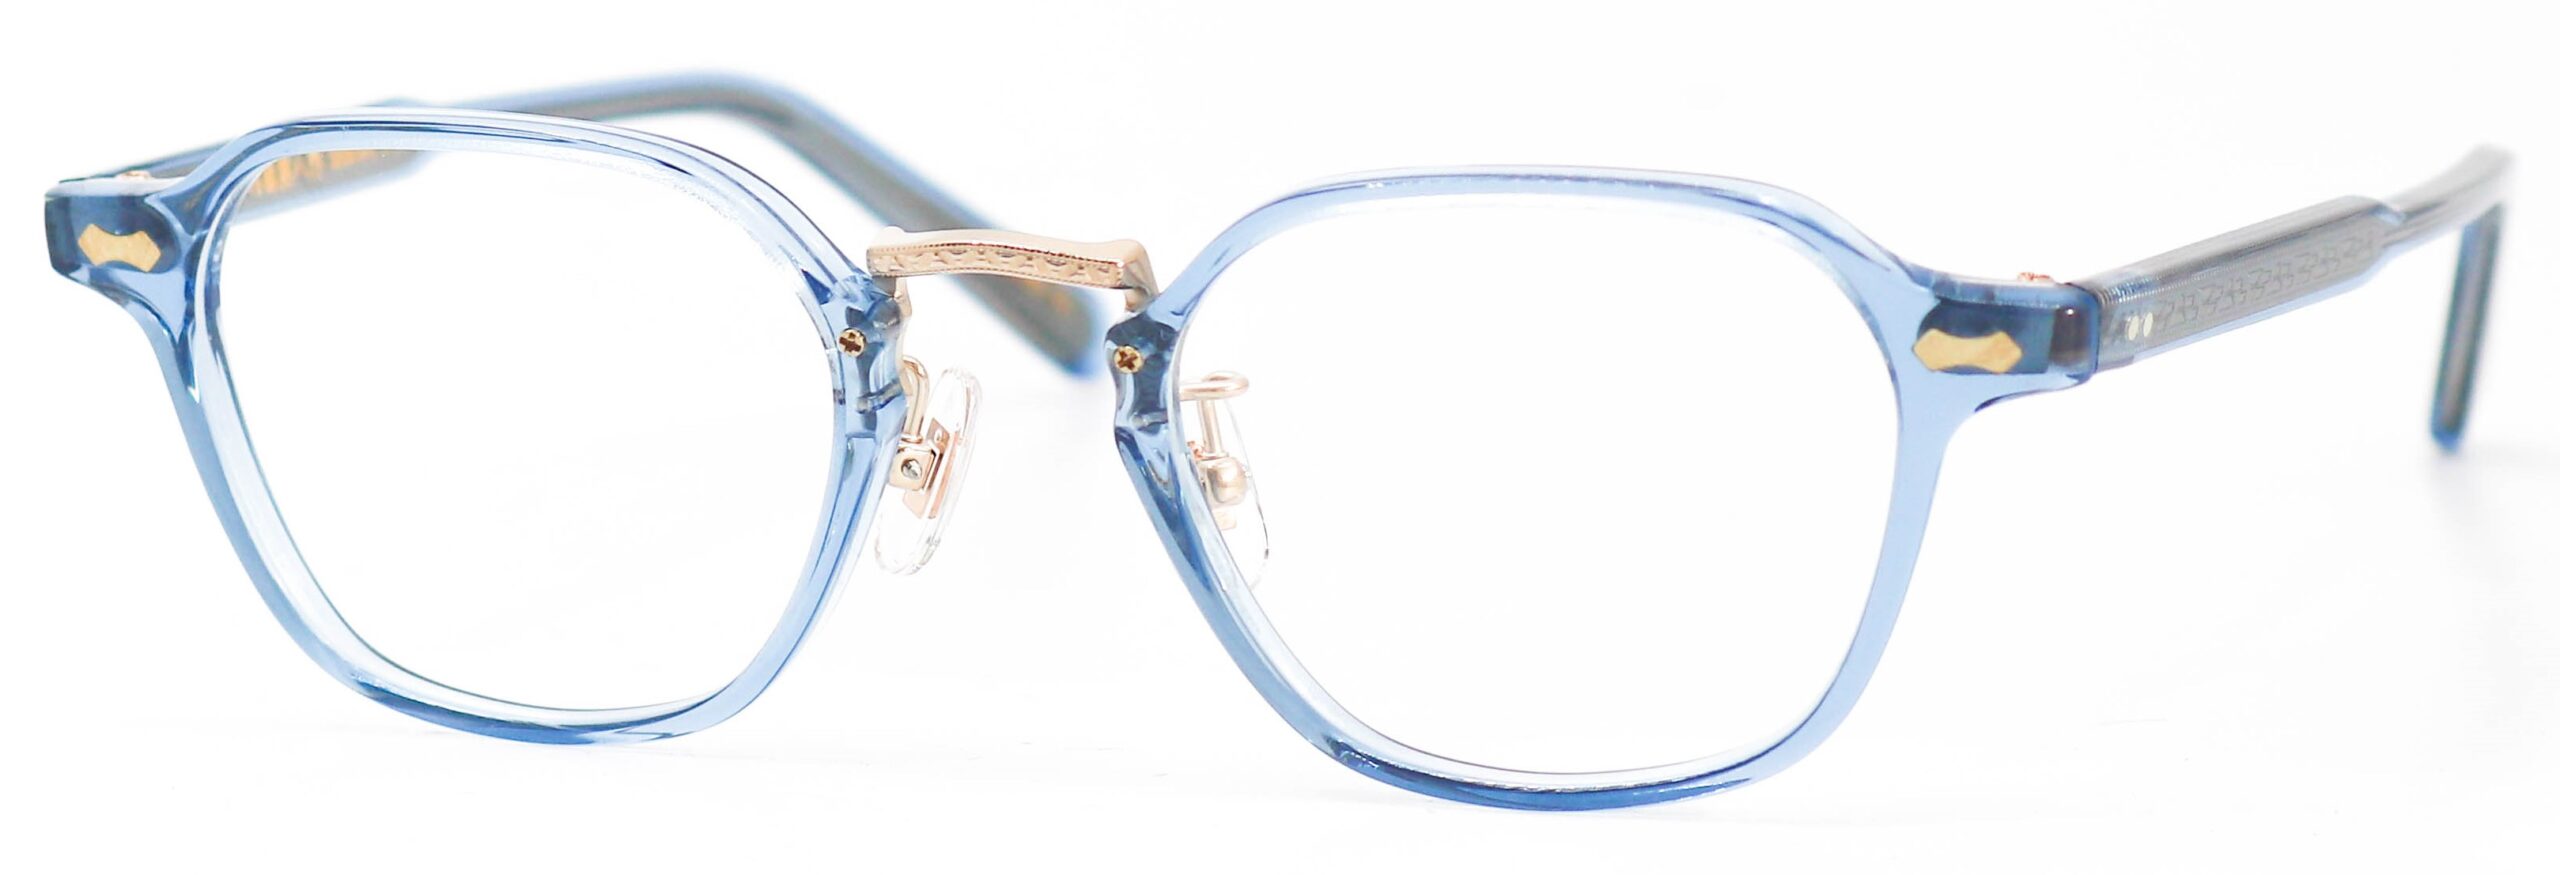 眼鏡のカラータイプC-3 ICEBlue/Gold